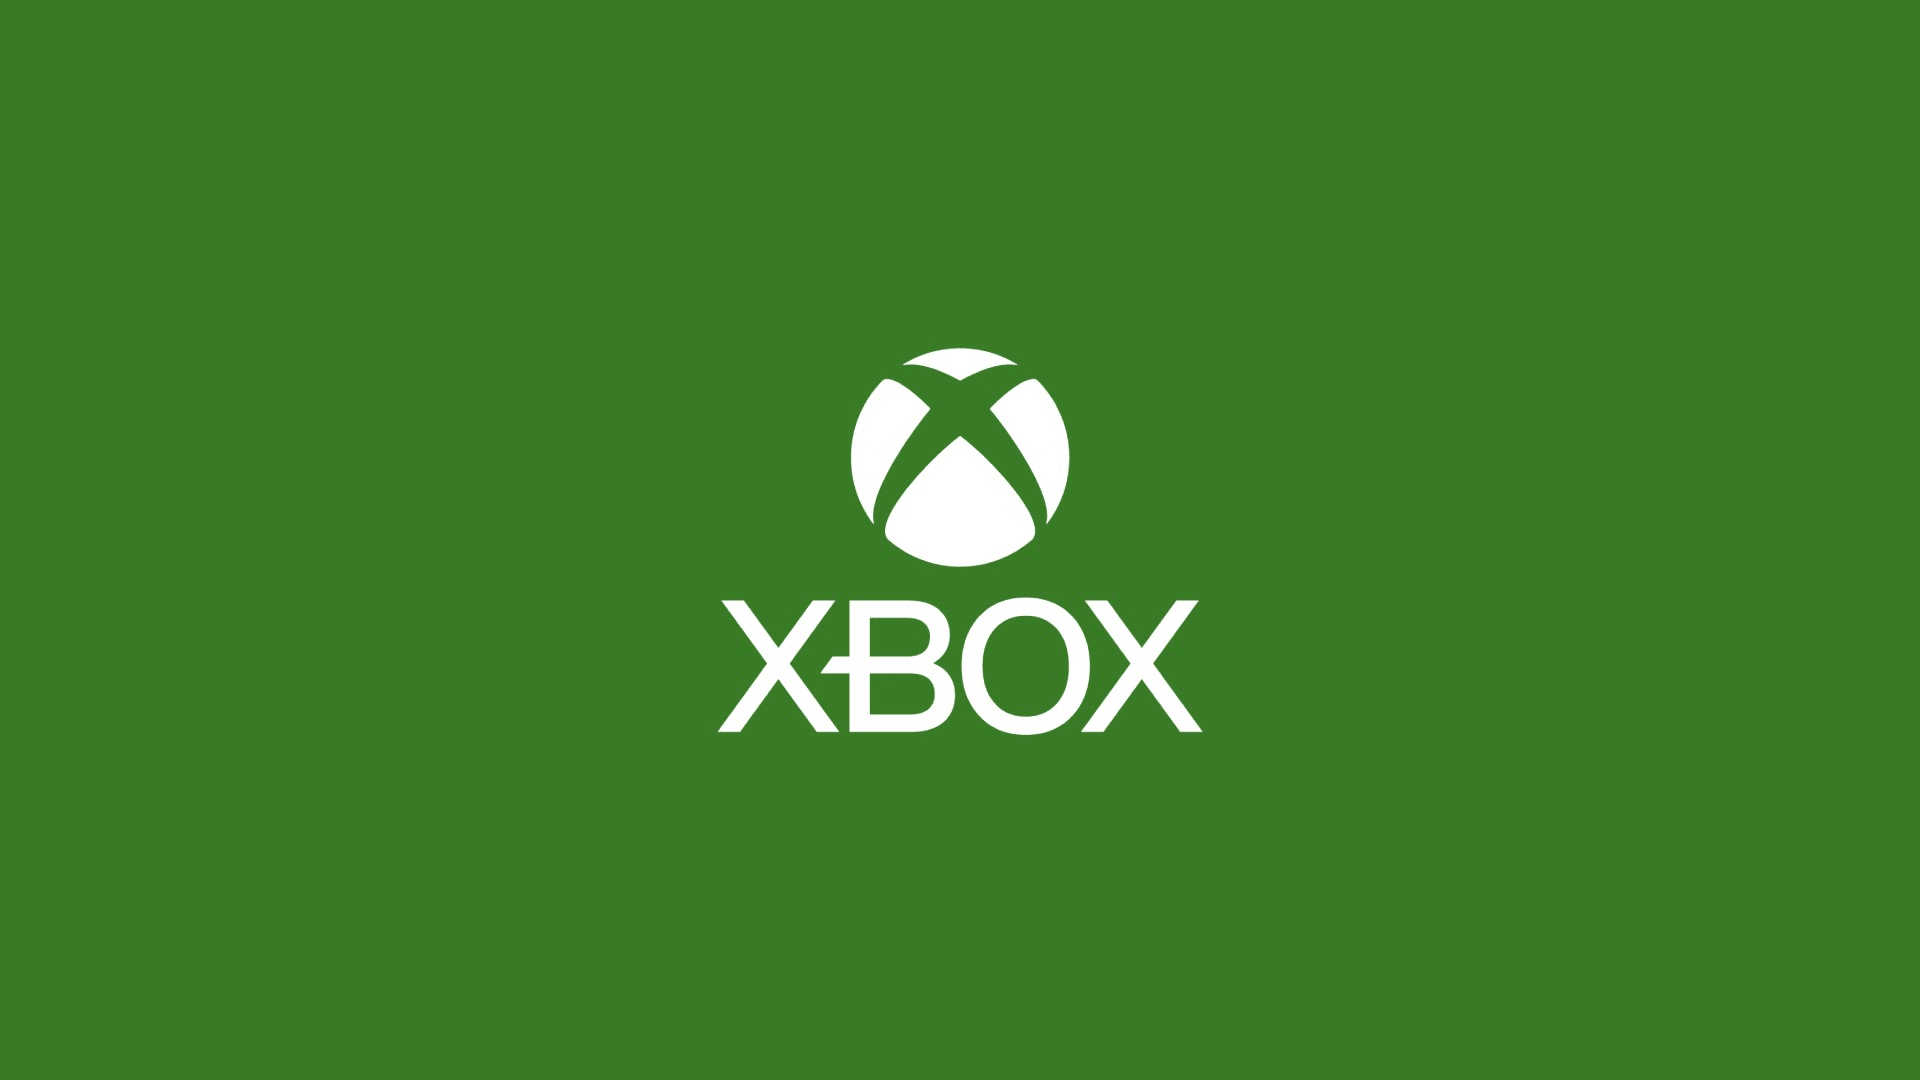 White Xbox logo on green background.